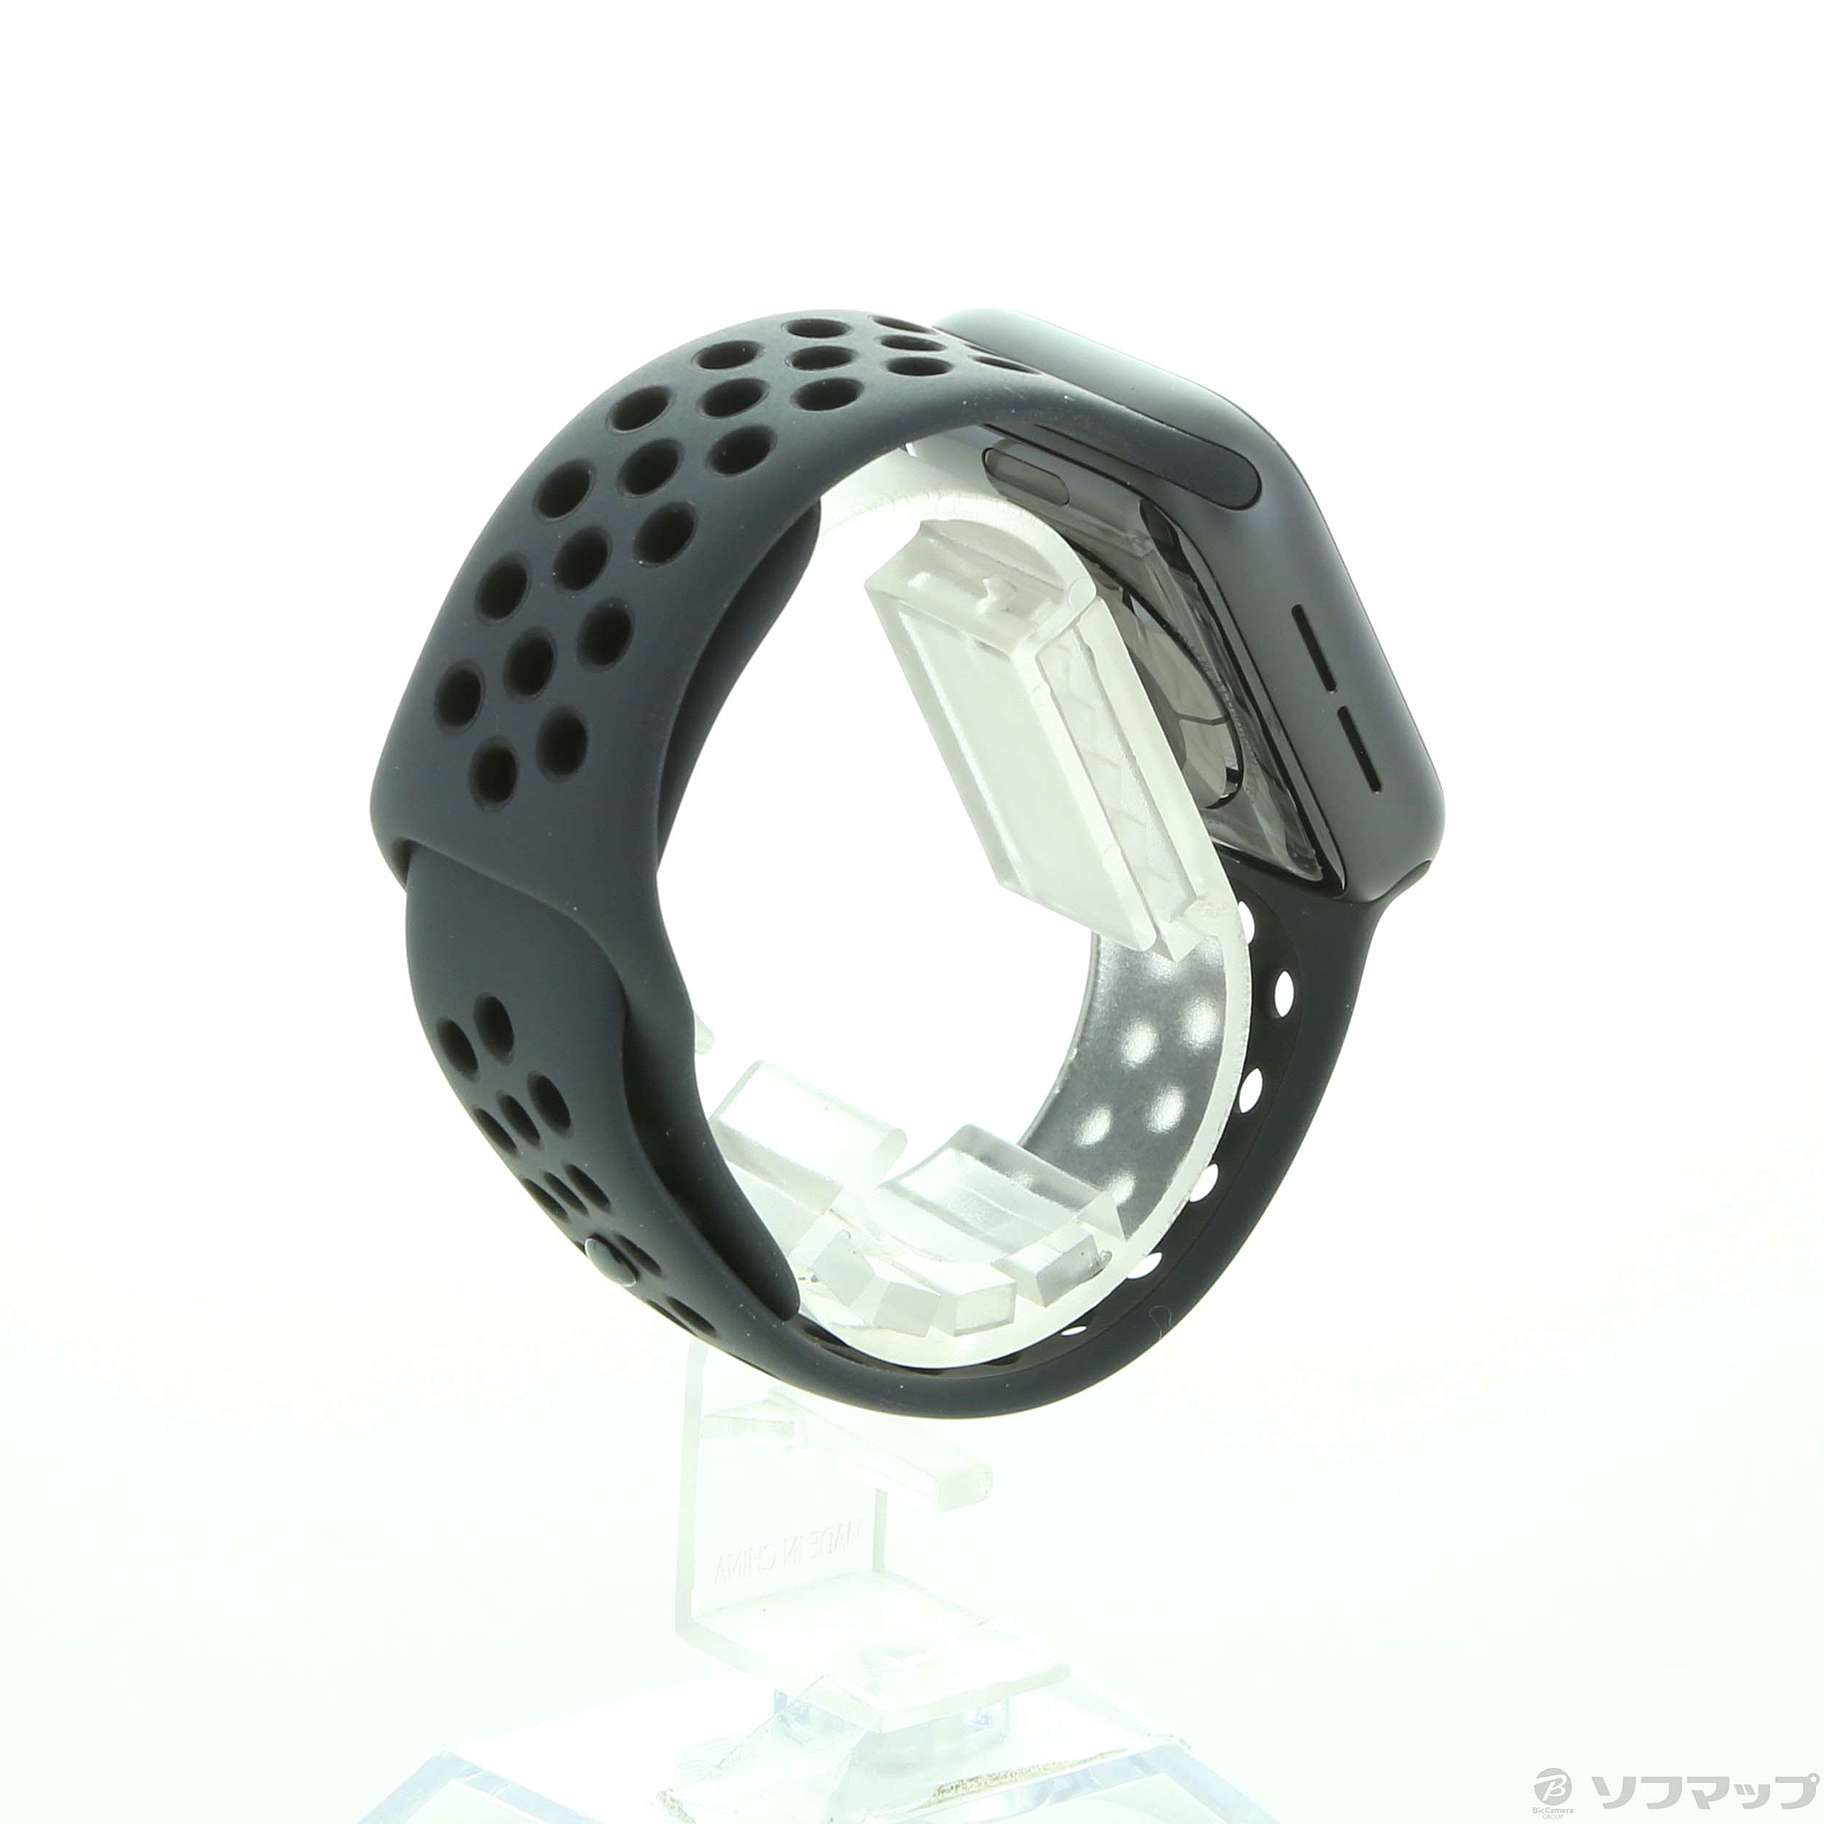 中古】Apple Watch Series 4 Nike+ GPS + Cellular 40mm スペース 